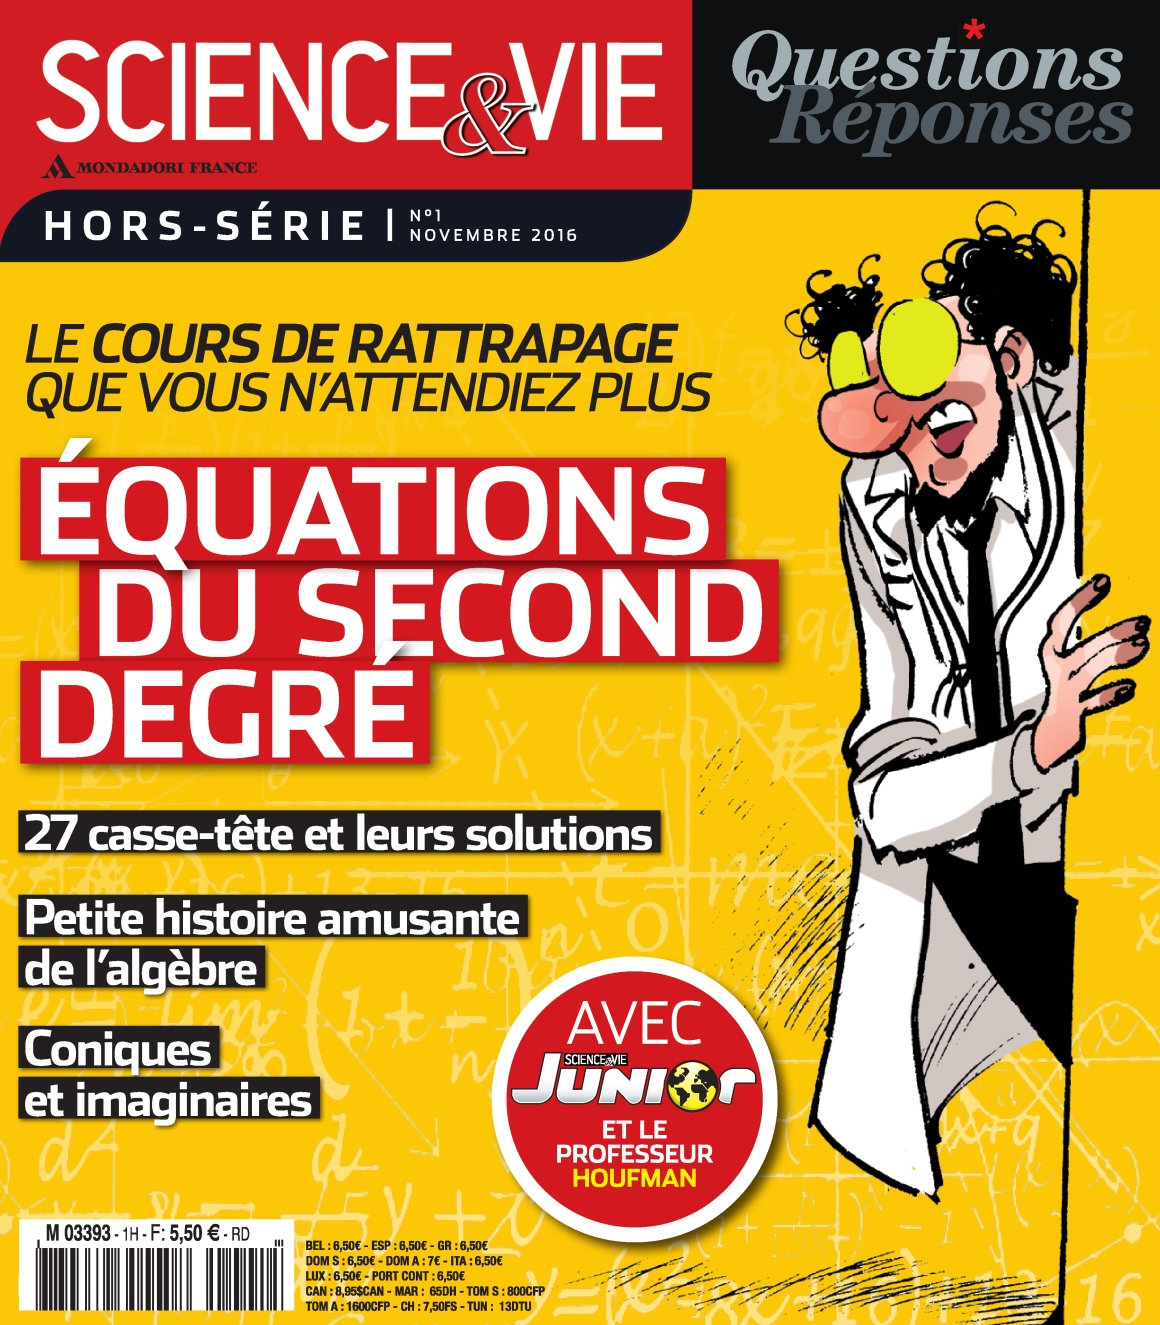 Science & Vie Questions Réponses Hors Série N°1 - Novembre 2016